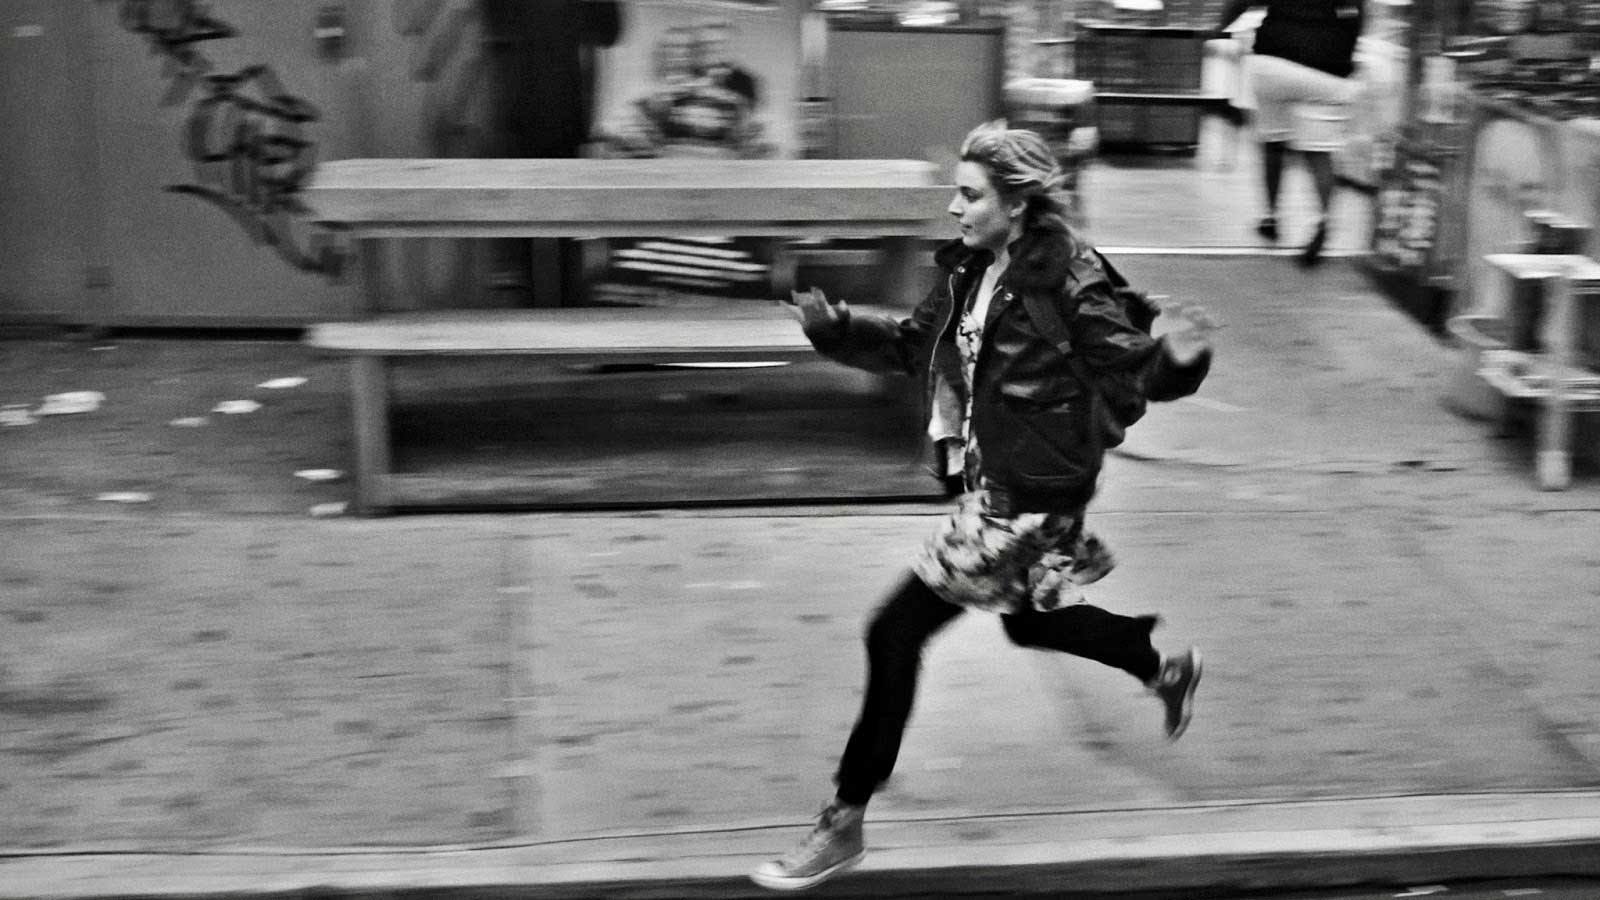 دویدن گرتا گرویگ در فیلم سیاه و سفید فرانسیس ها نوا بامباک